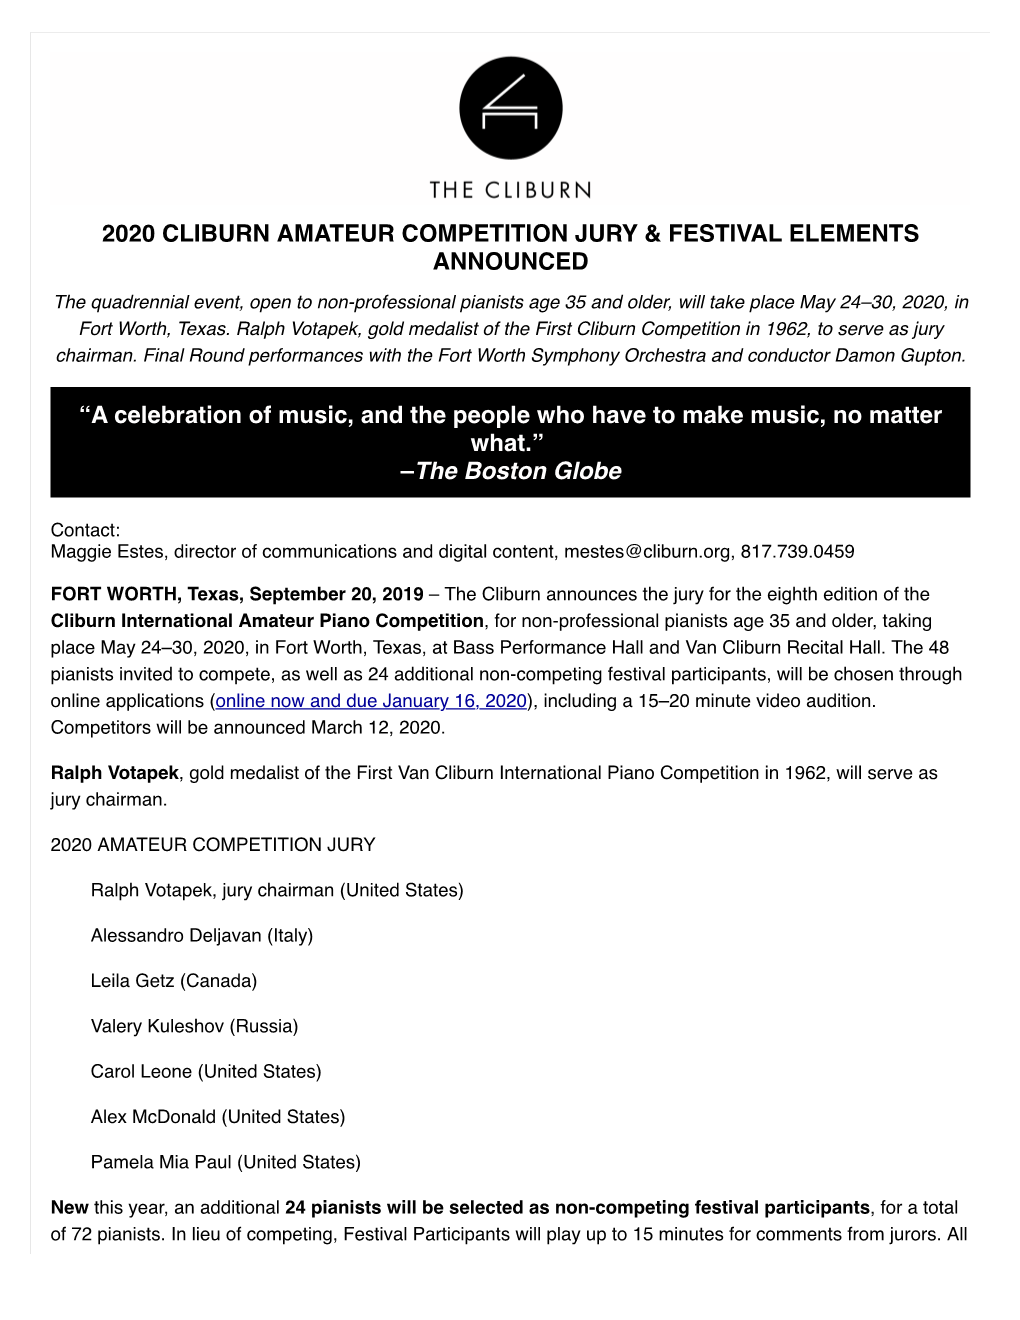 Cliburn Announces 2020 Amateur Competition Jury